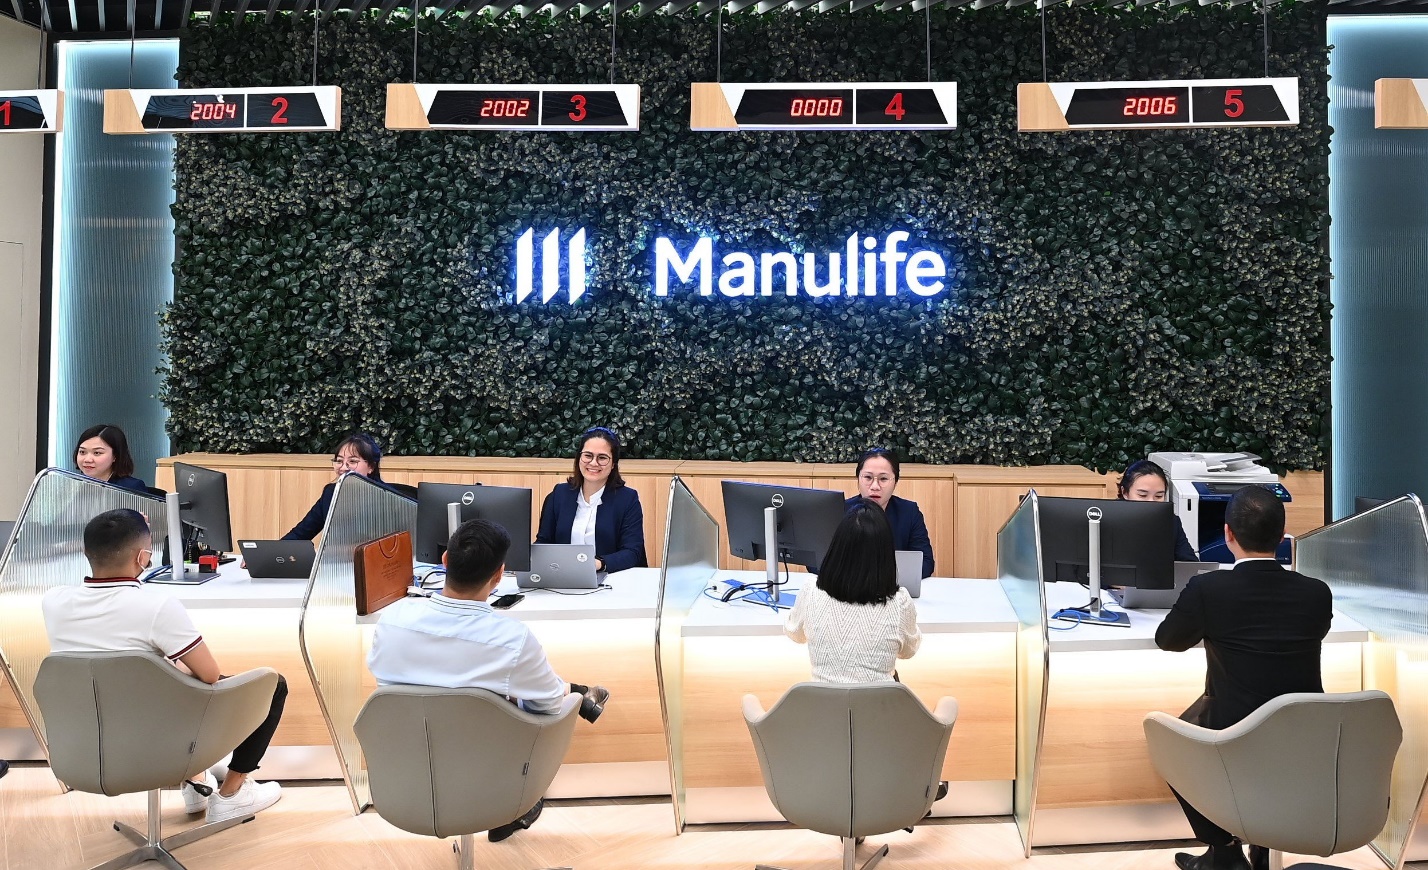 Manulife tiên phong ứng dụng thêm công nghệ để khách hàng hiểu đủ, mua đúng - Ảnh 1.